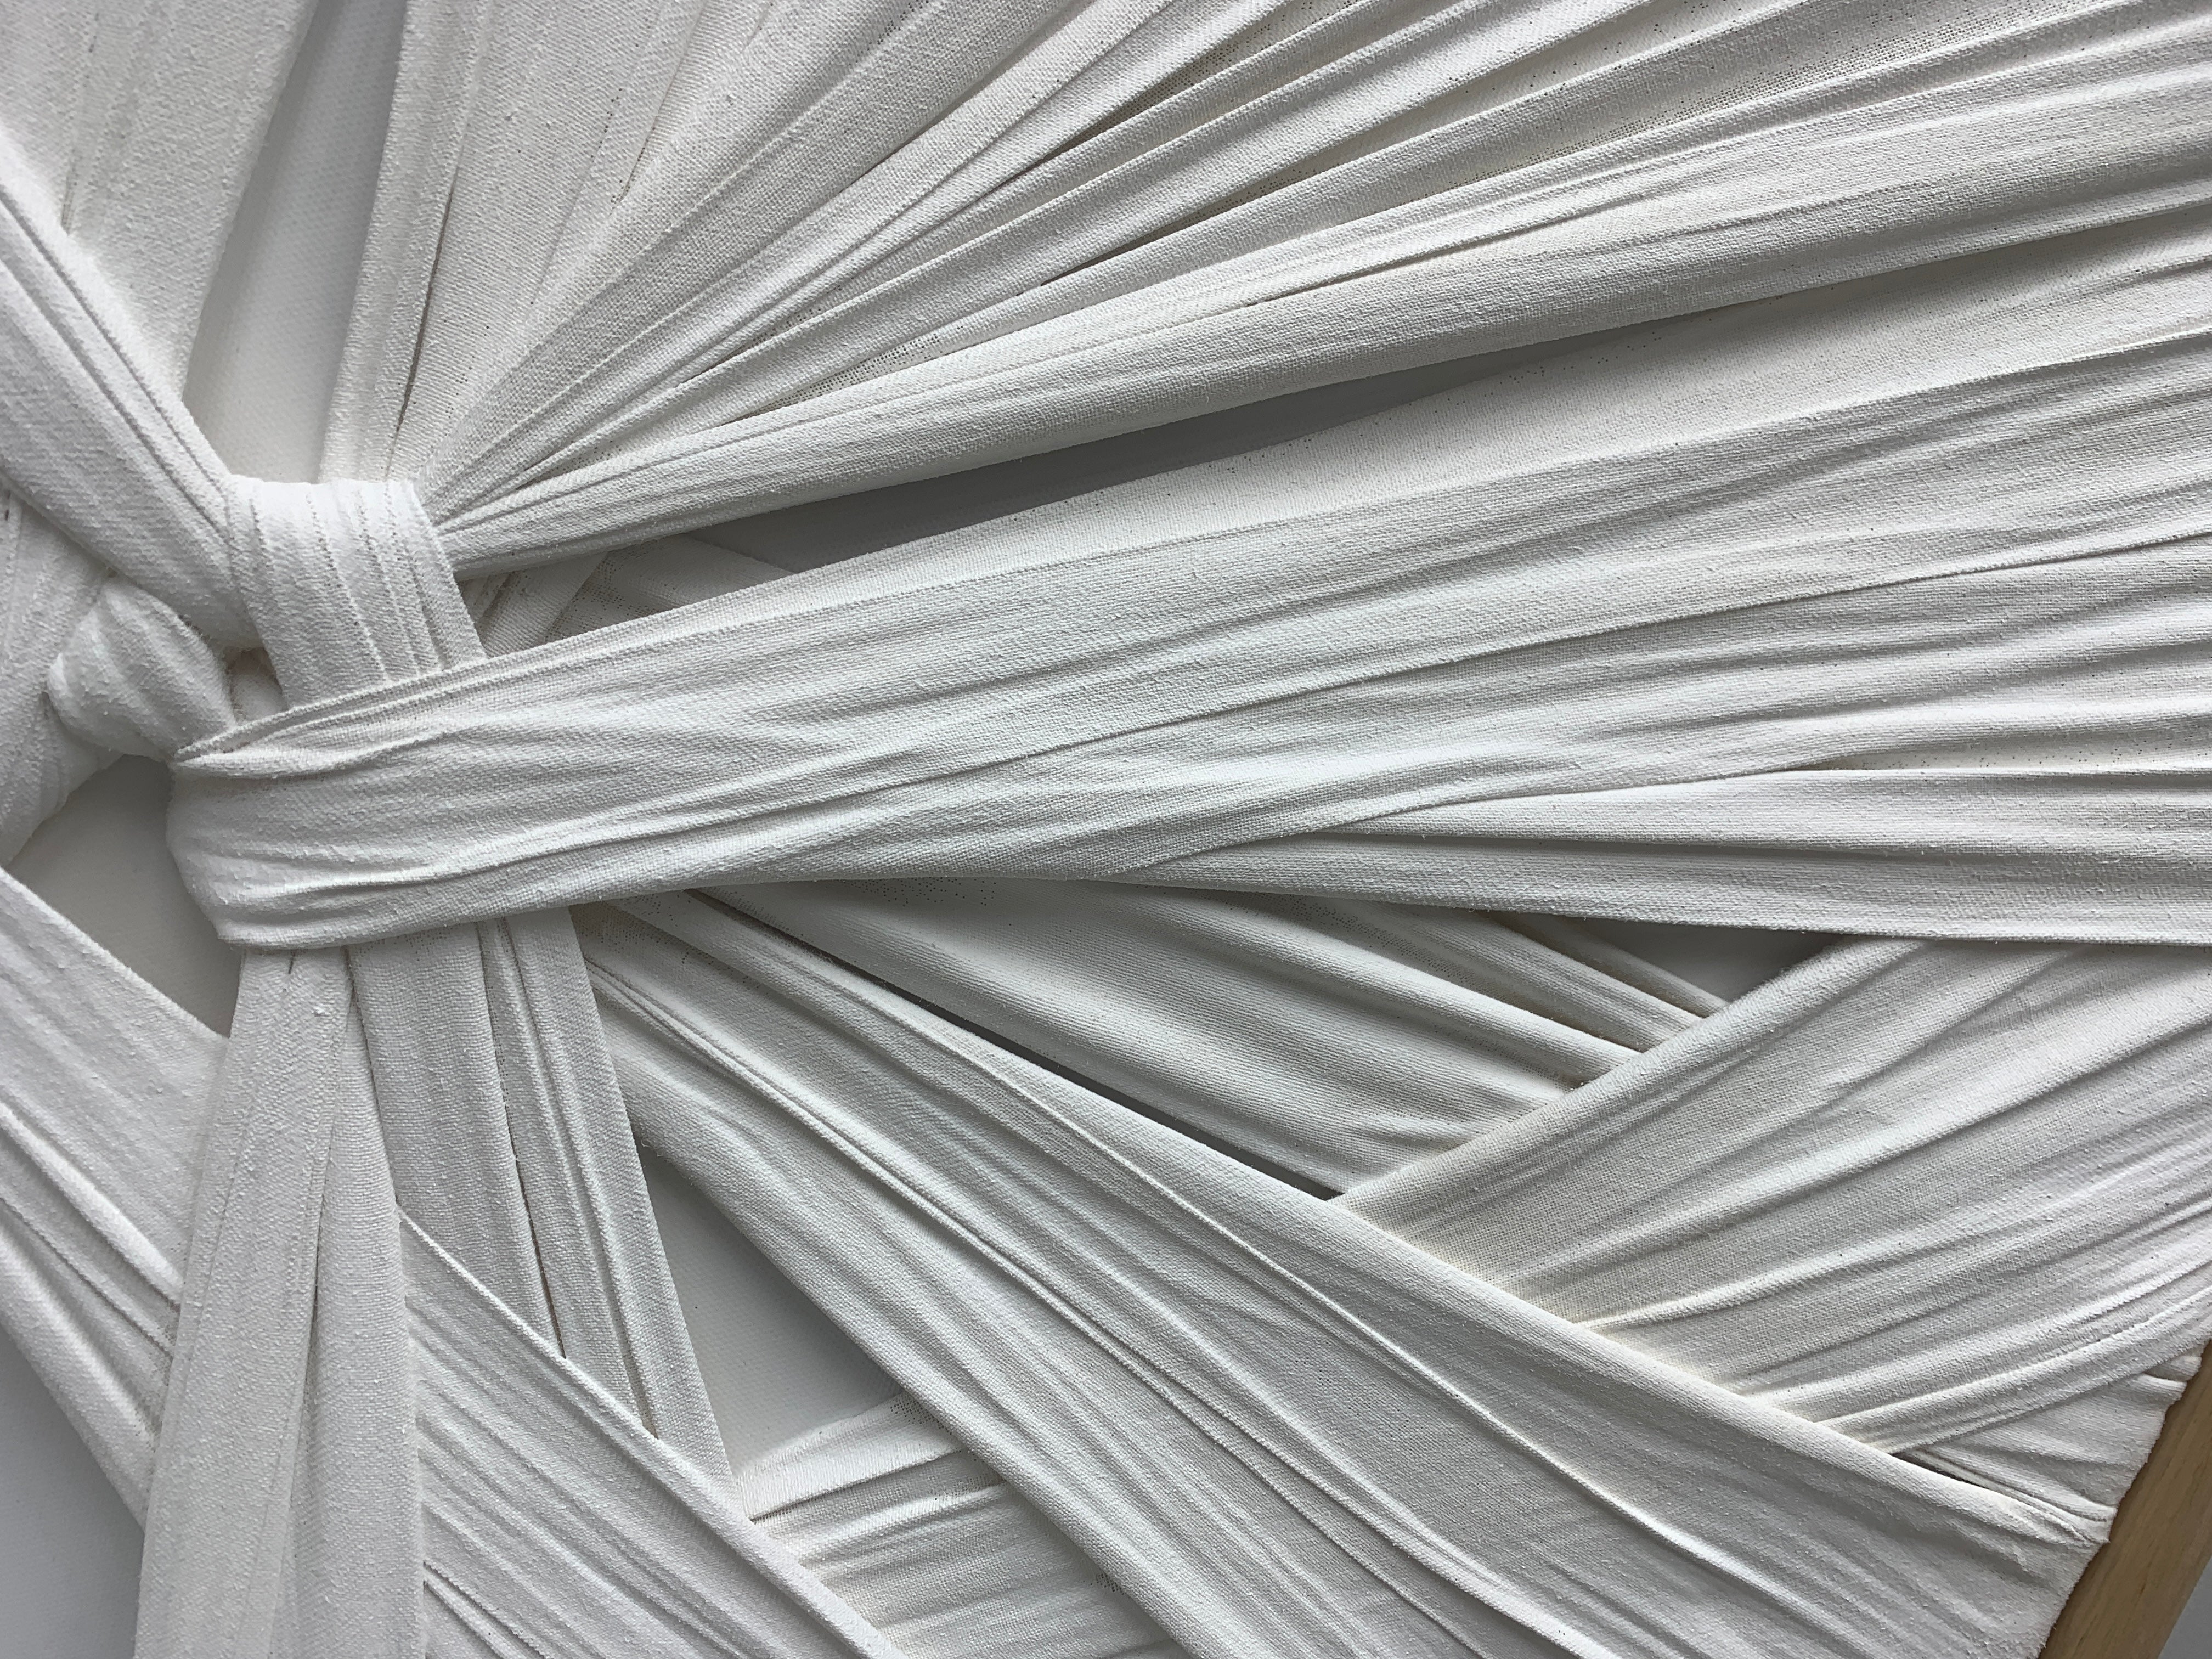 Interwoven Chaos: Textured Wall Art Wall Art Interior Moderna   